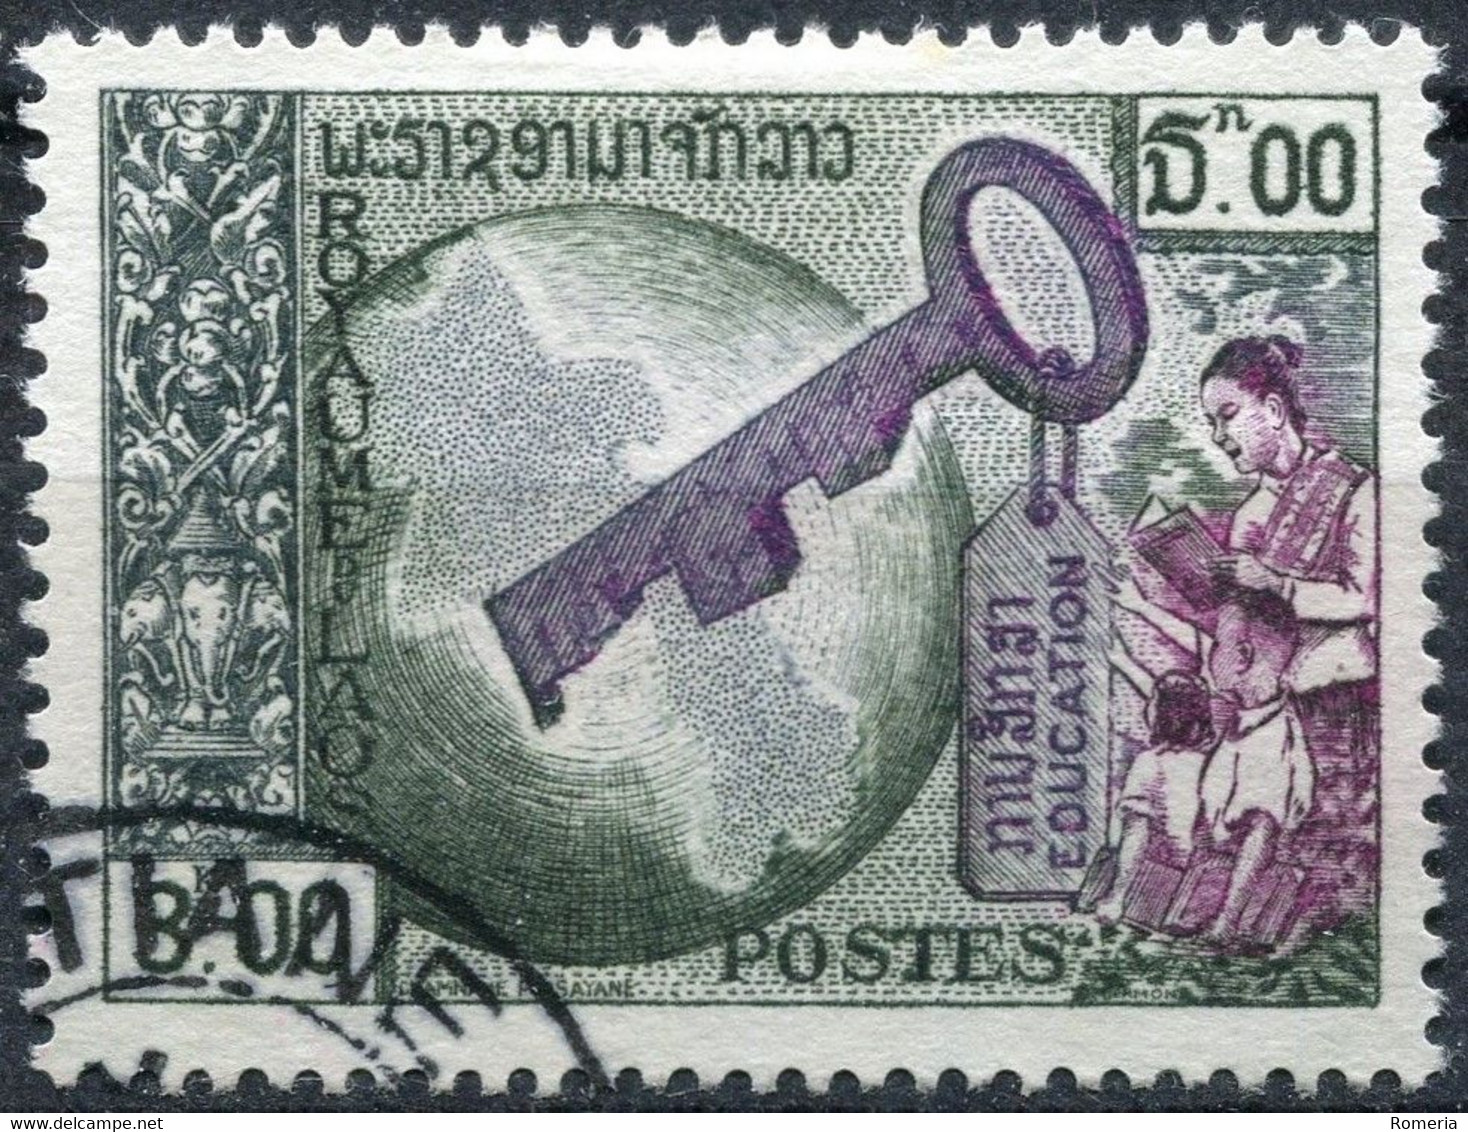 Laos - 1951 - > 1959 - Lots timbres oblitérés et taxe - Nºs dans description